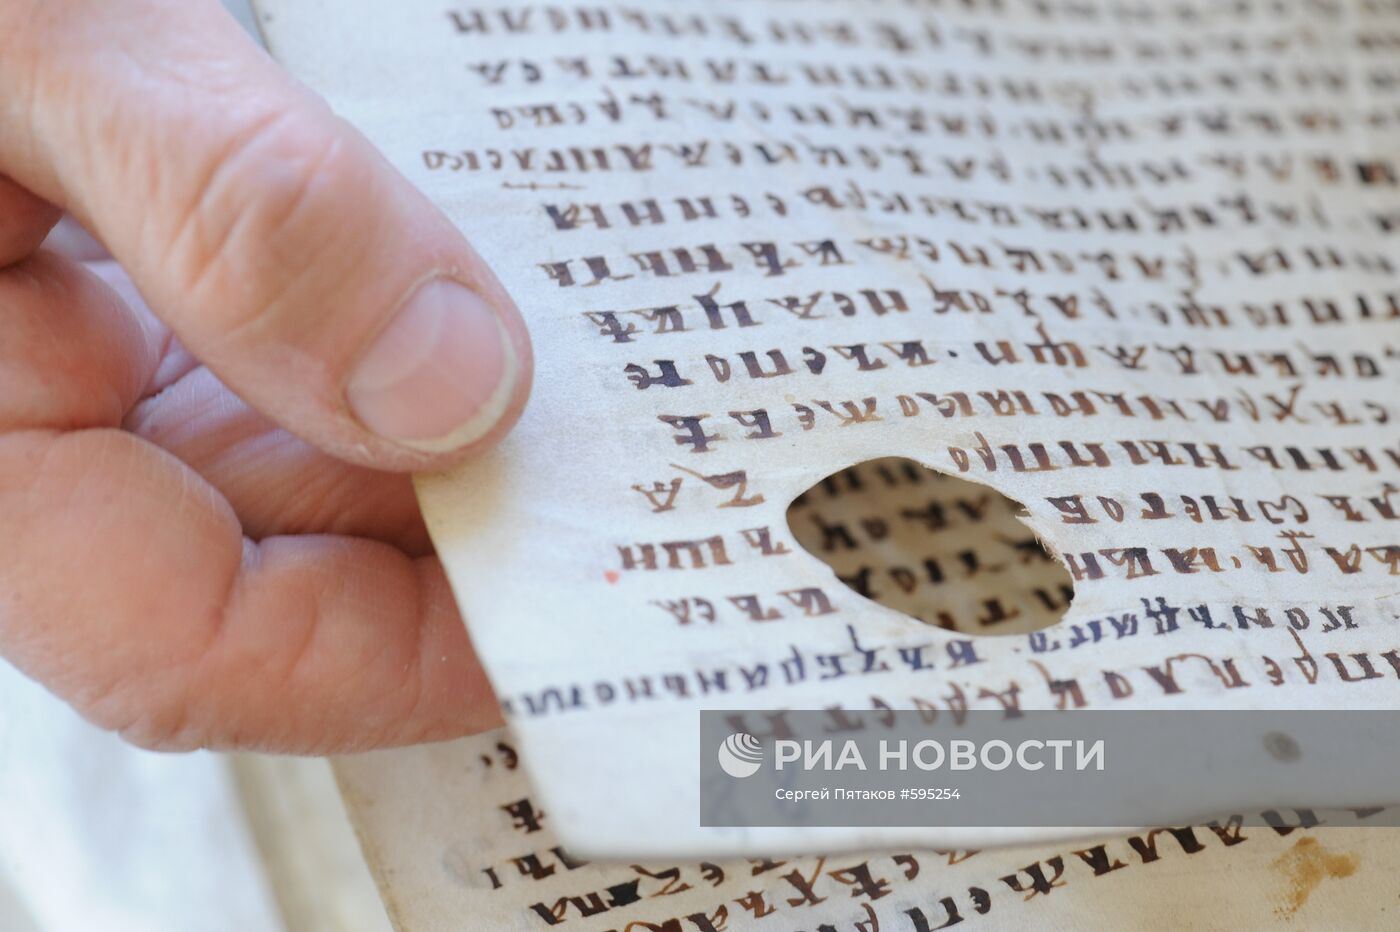 Папирусная книга XIII века